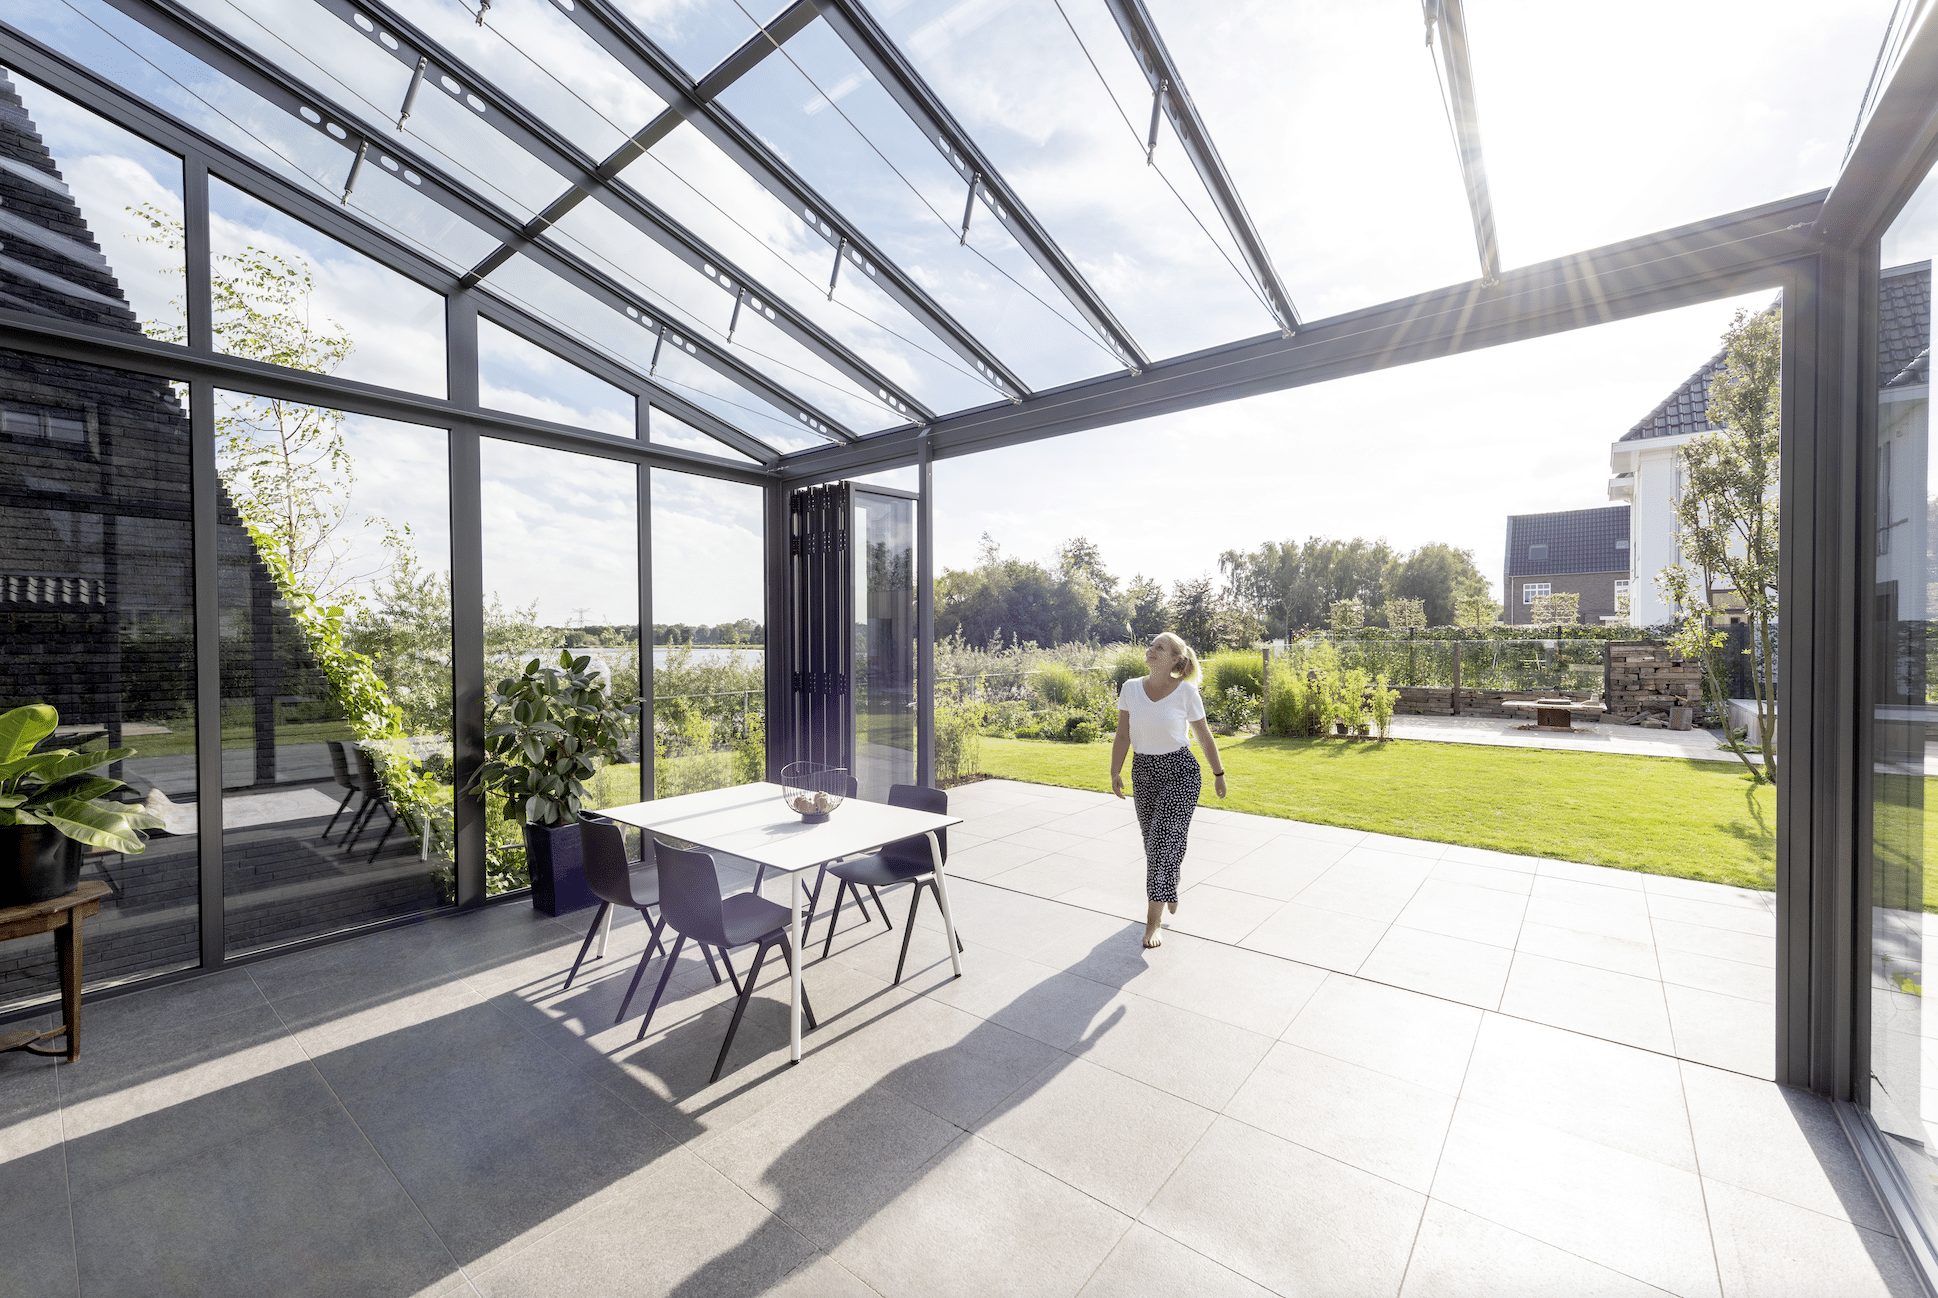 Mit dem Wintergarten von Solarlux schaffen Sie einen Raum, der viel Tageslicht ins Haus bringt und einen tollen Panoramablick in den Garten bietet.